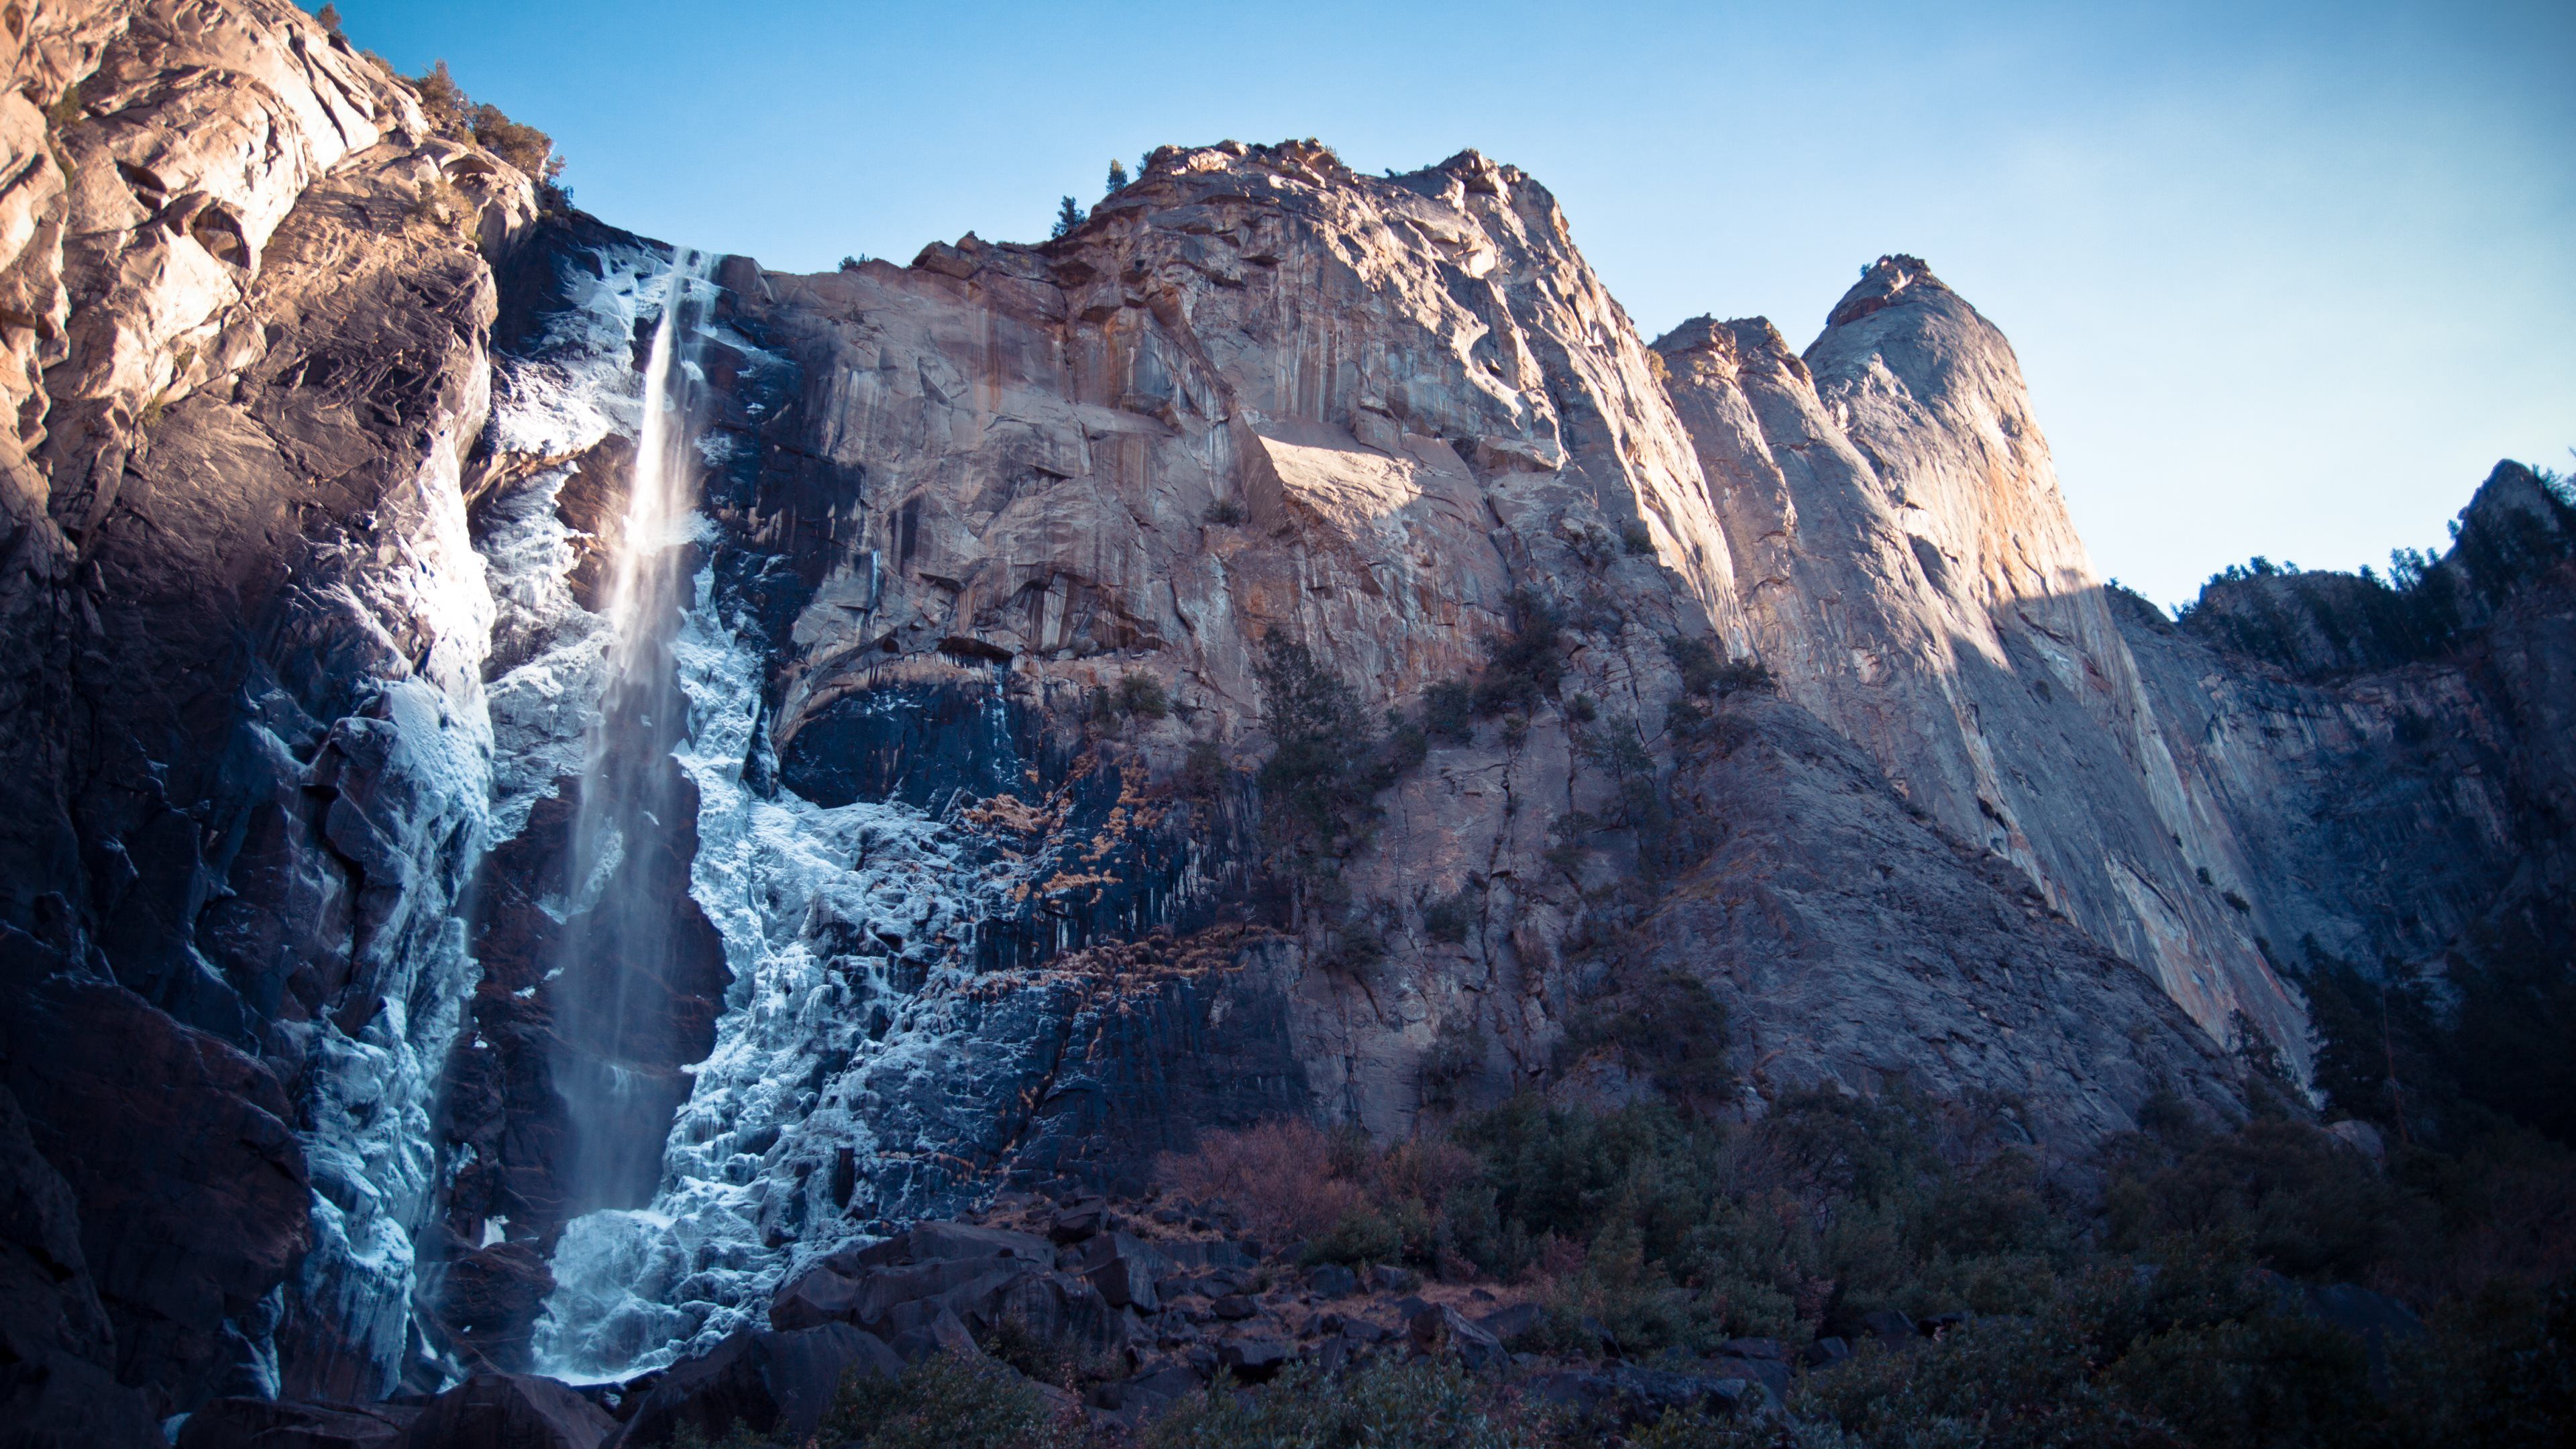 The Ultimate 4k Wallpaper Dump Falls. Waterfall wallpaper, Mountain waterfall, 8k wallpaper